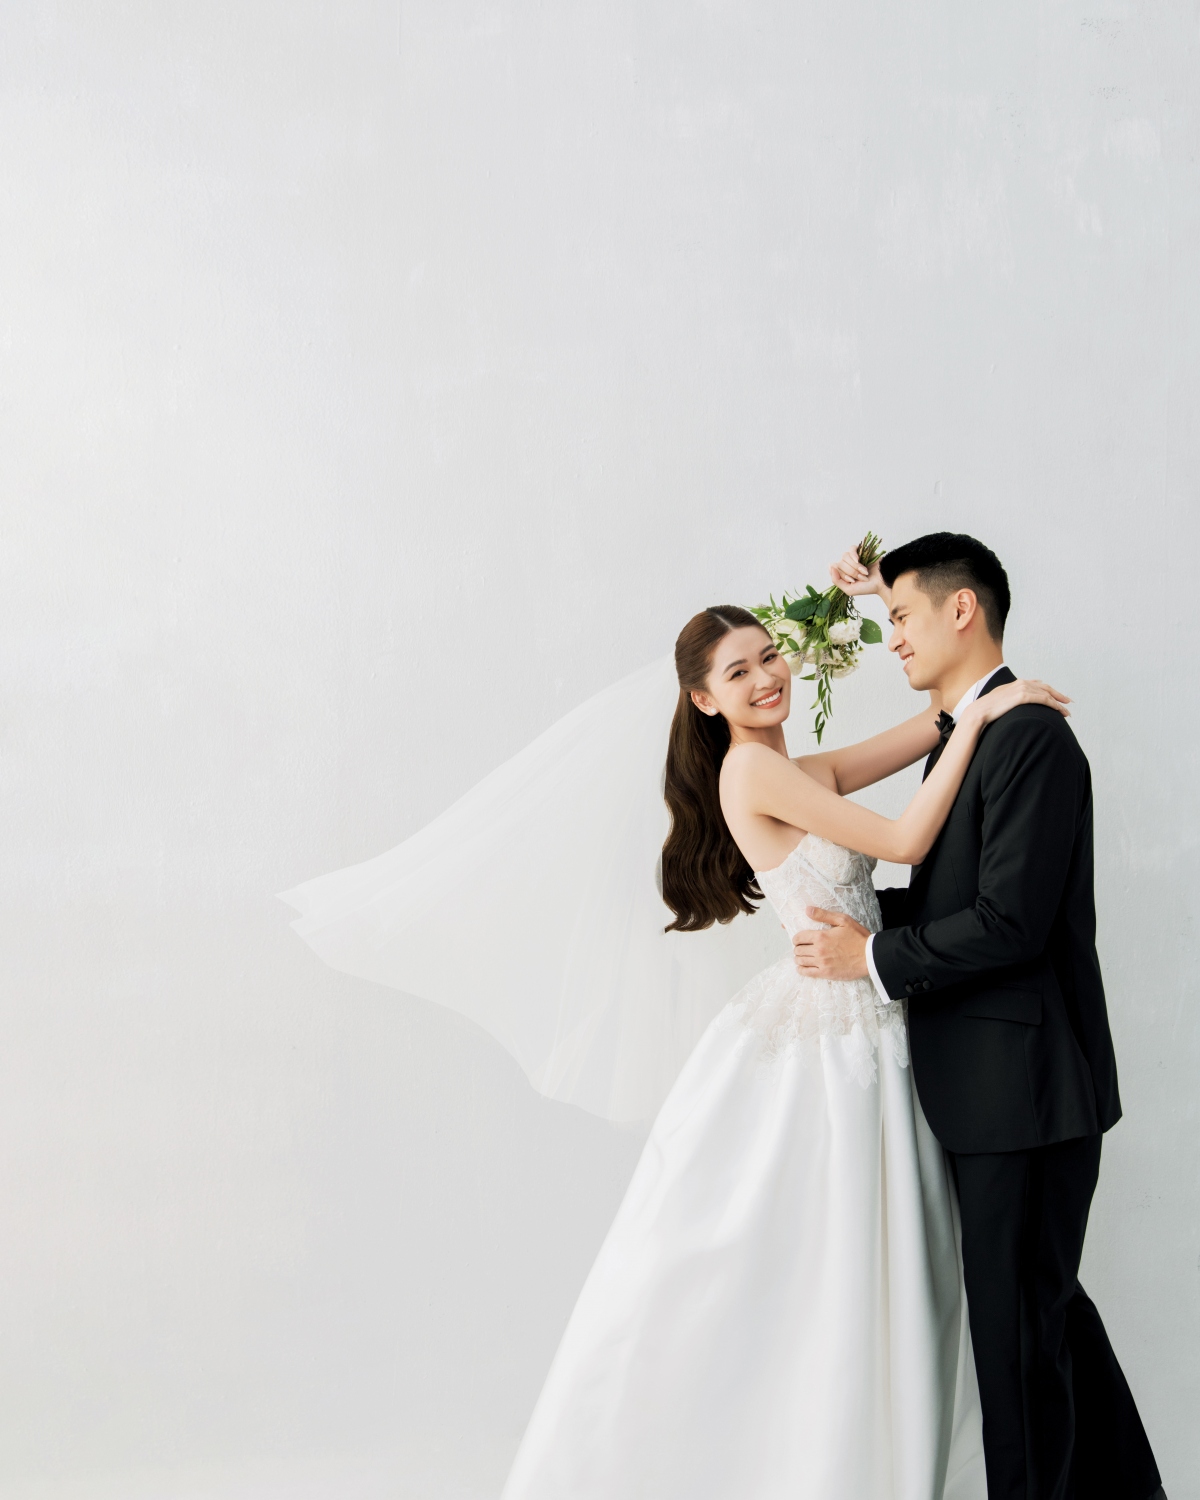 Ảnh cưới đơn giản của Á hậu Thùy Dung và bạn trai doanh nhân - Ảnh 6.